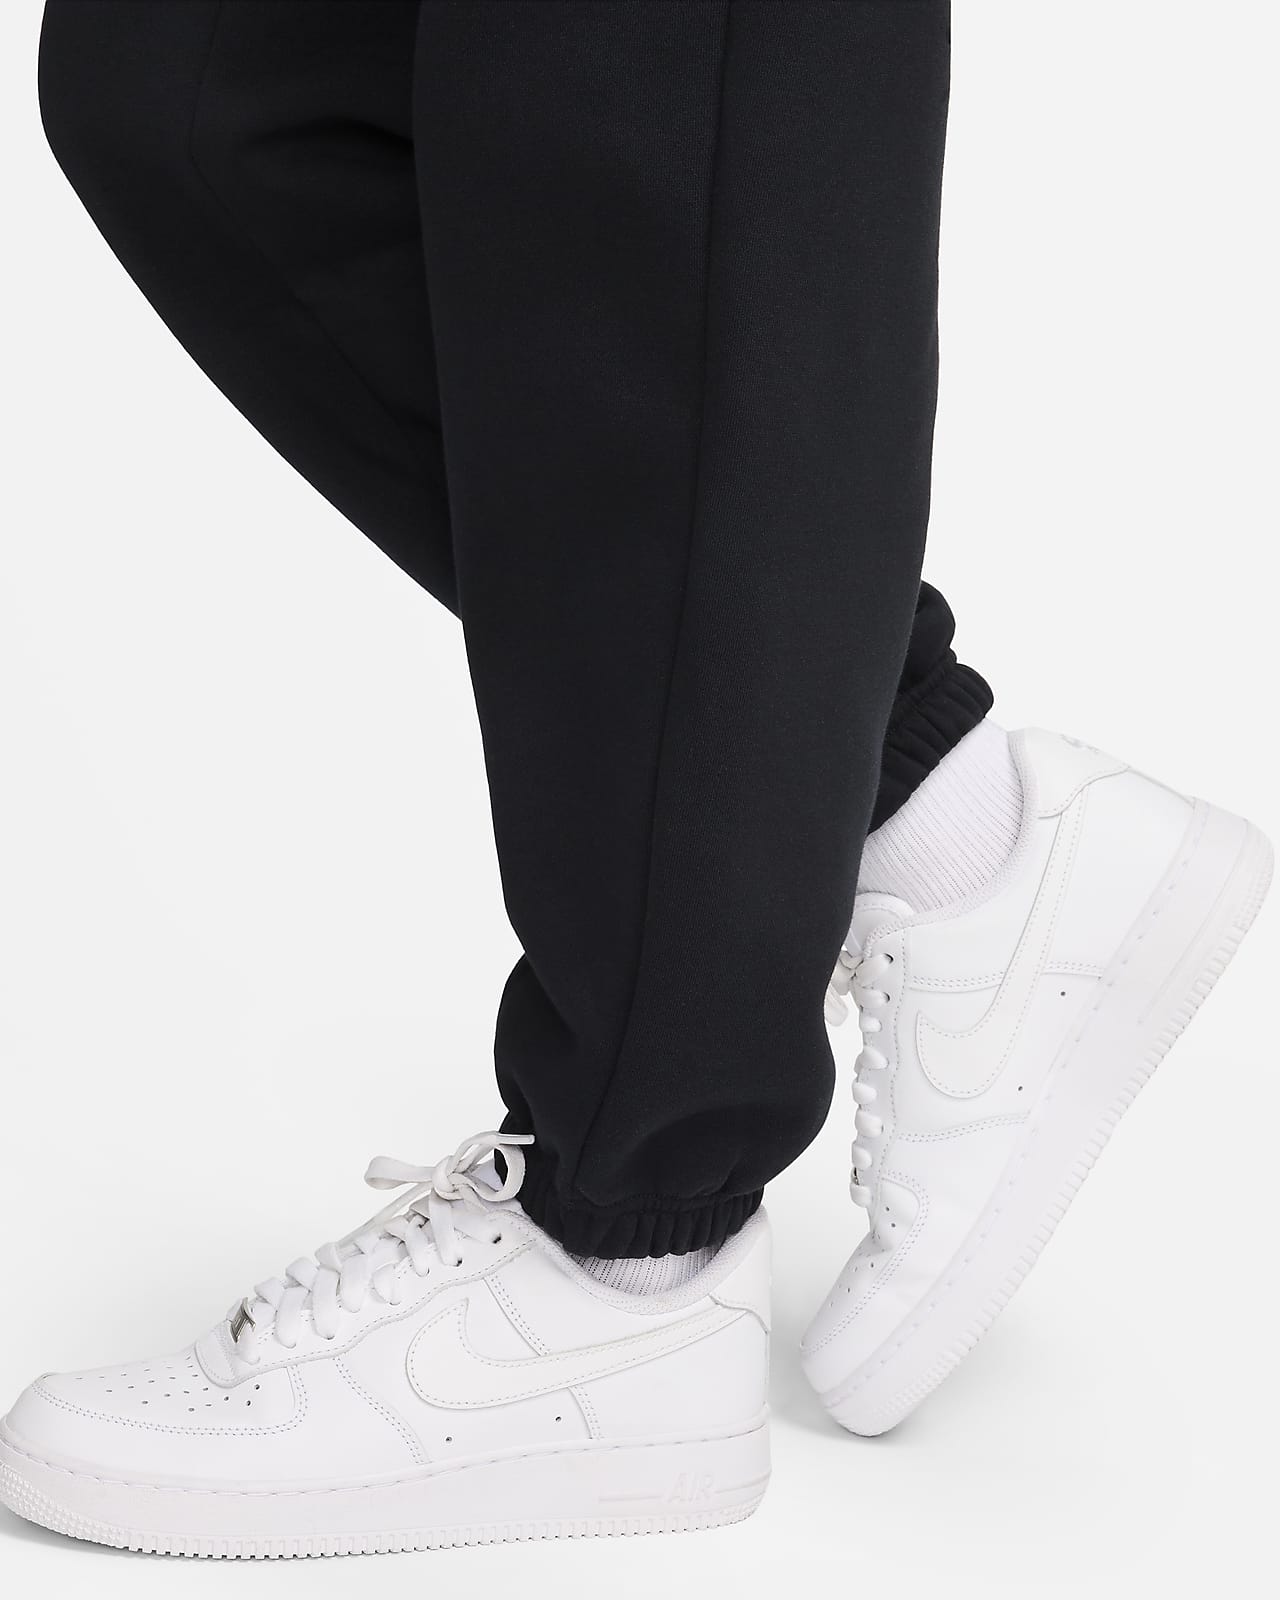 Nike Women's Fleece Sweatpants CI1196, Standard Fit Drawstring